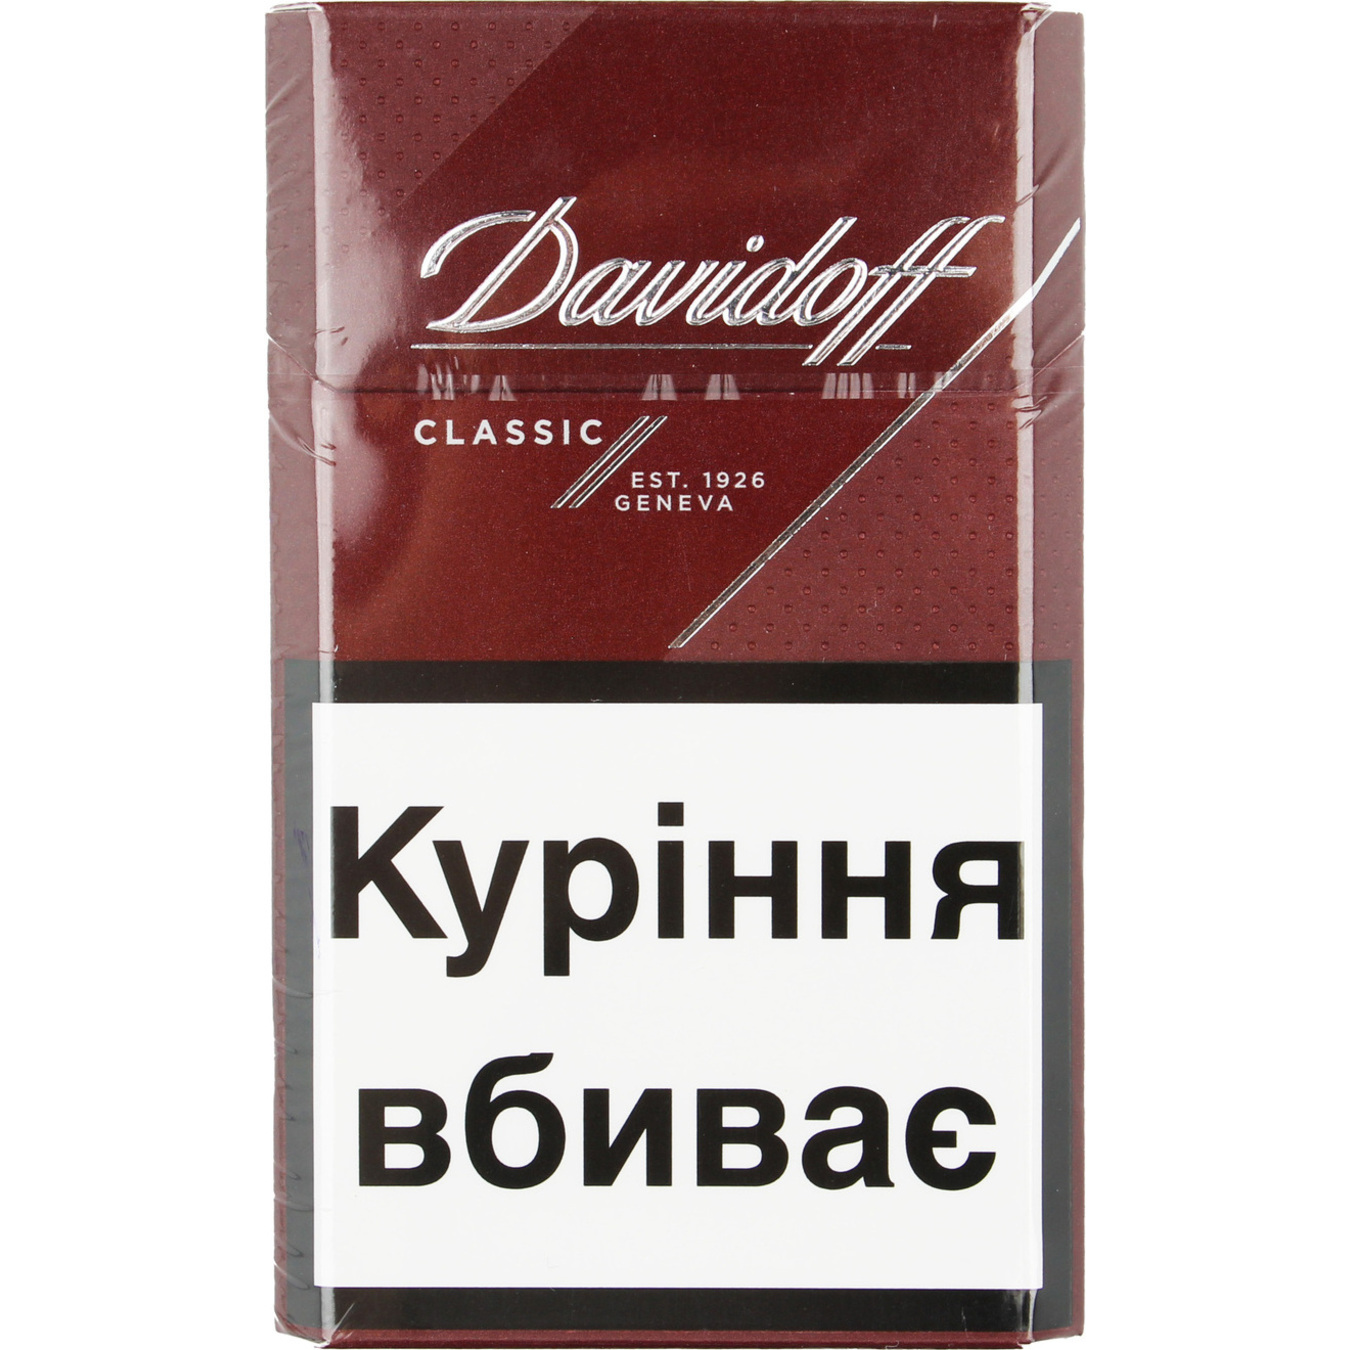 Сигареты Davidoff Classic 20шт (цена указана без акциза)